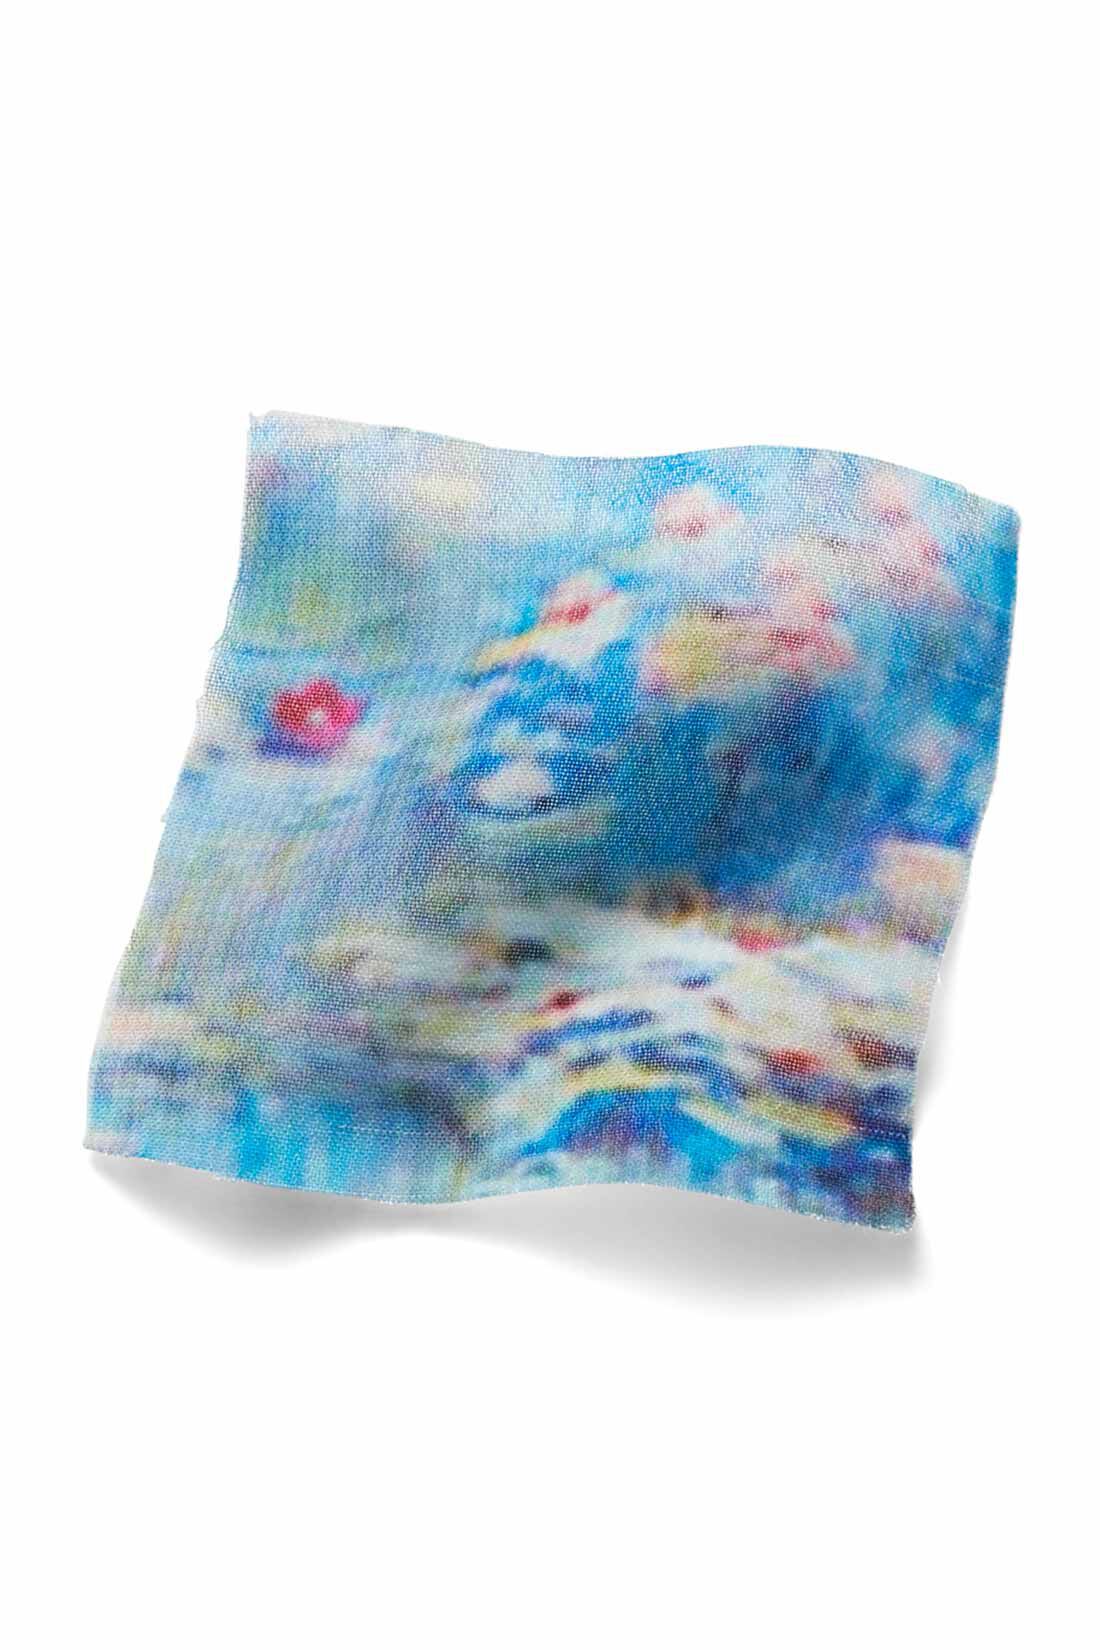 IEDIT|IEDIT[イディット]　モネの睡蓮をまとうシフォンスカート〈ブルー〉|原画をもとにパターンを起こし、水面を思わせる、透け感のあるシフォン素材にプリント。 ※お届けするカラーとは異なります。